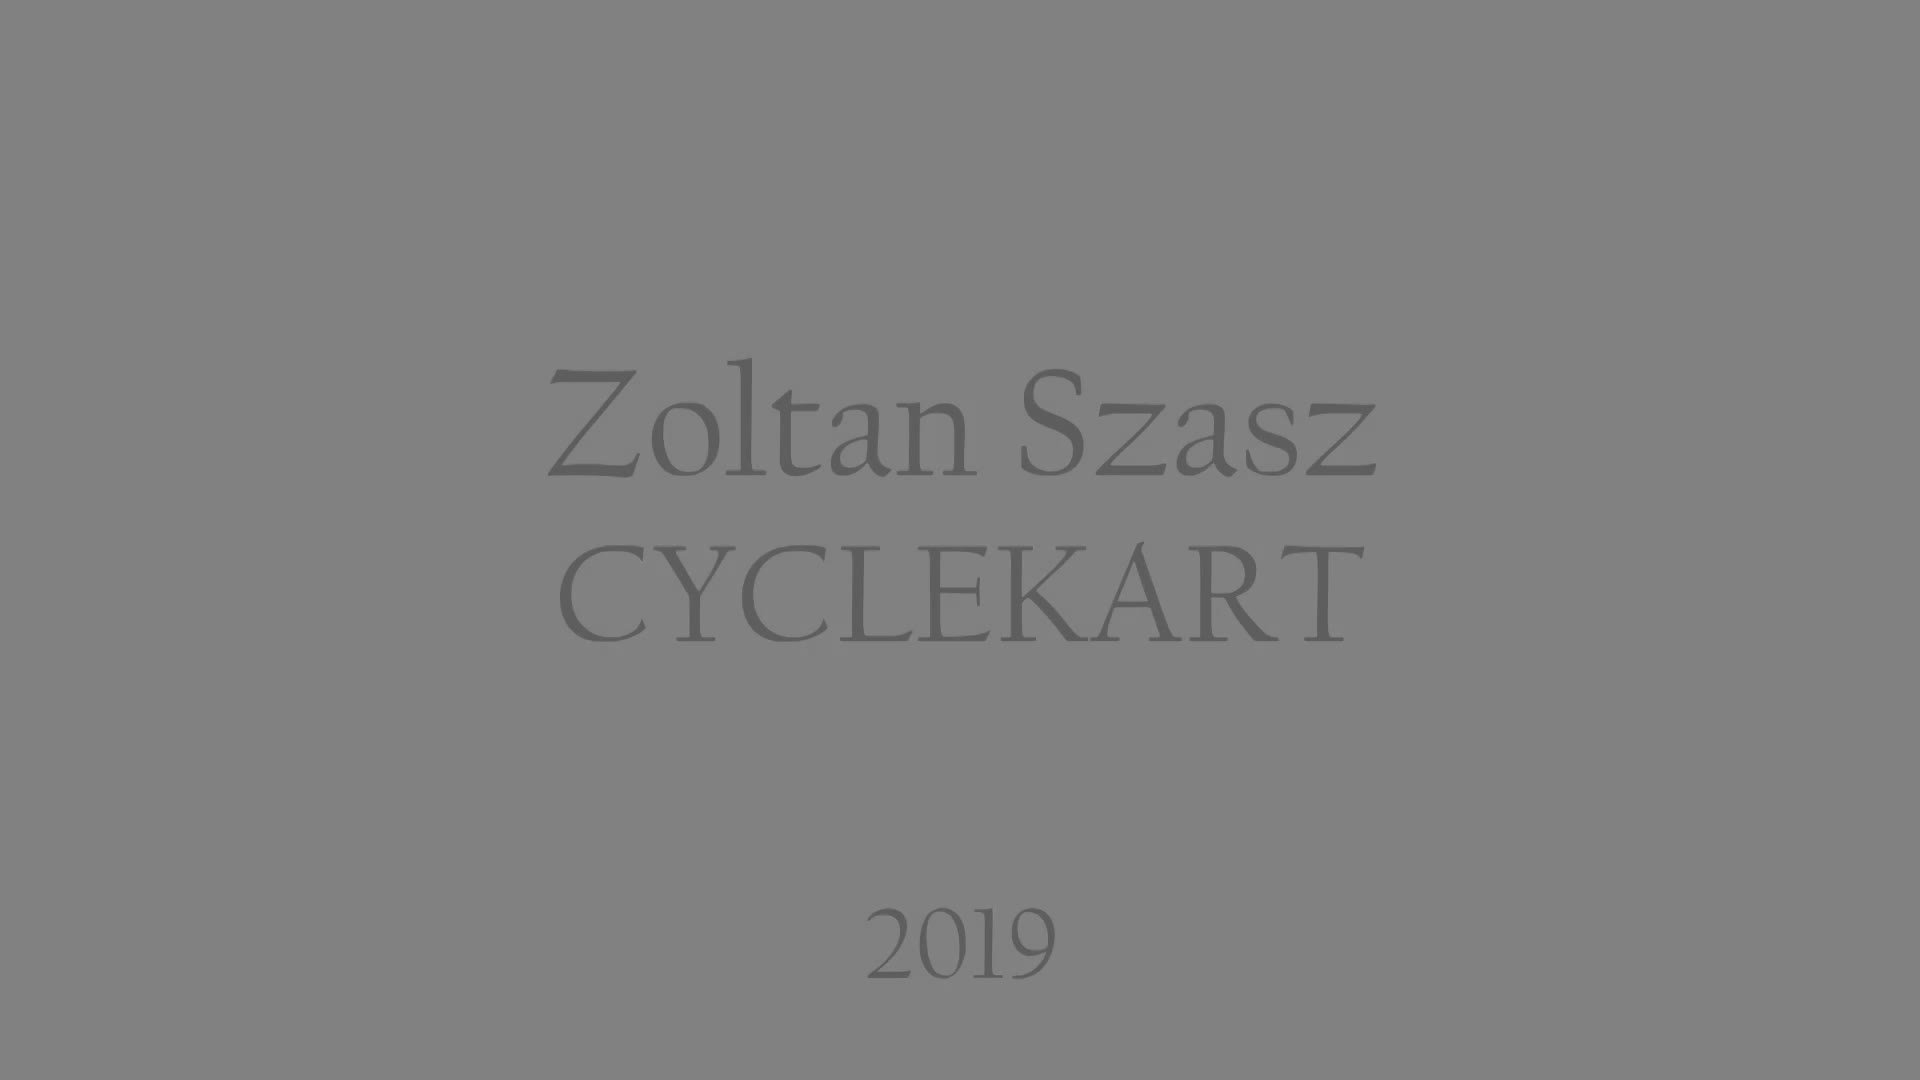 CycleKart design V1